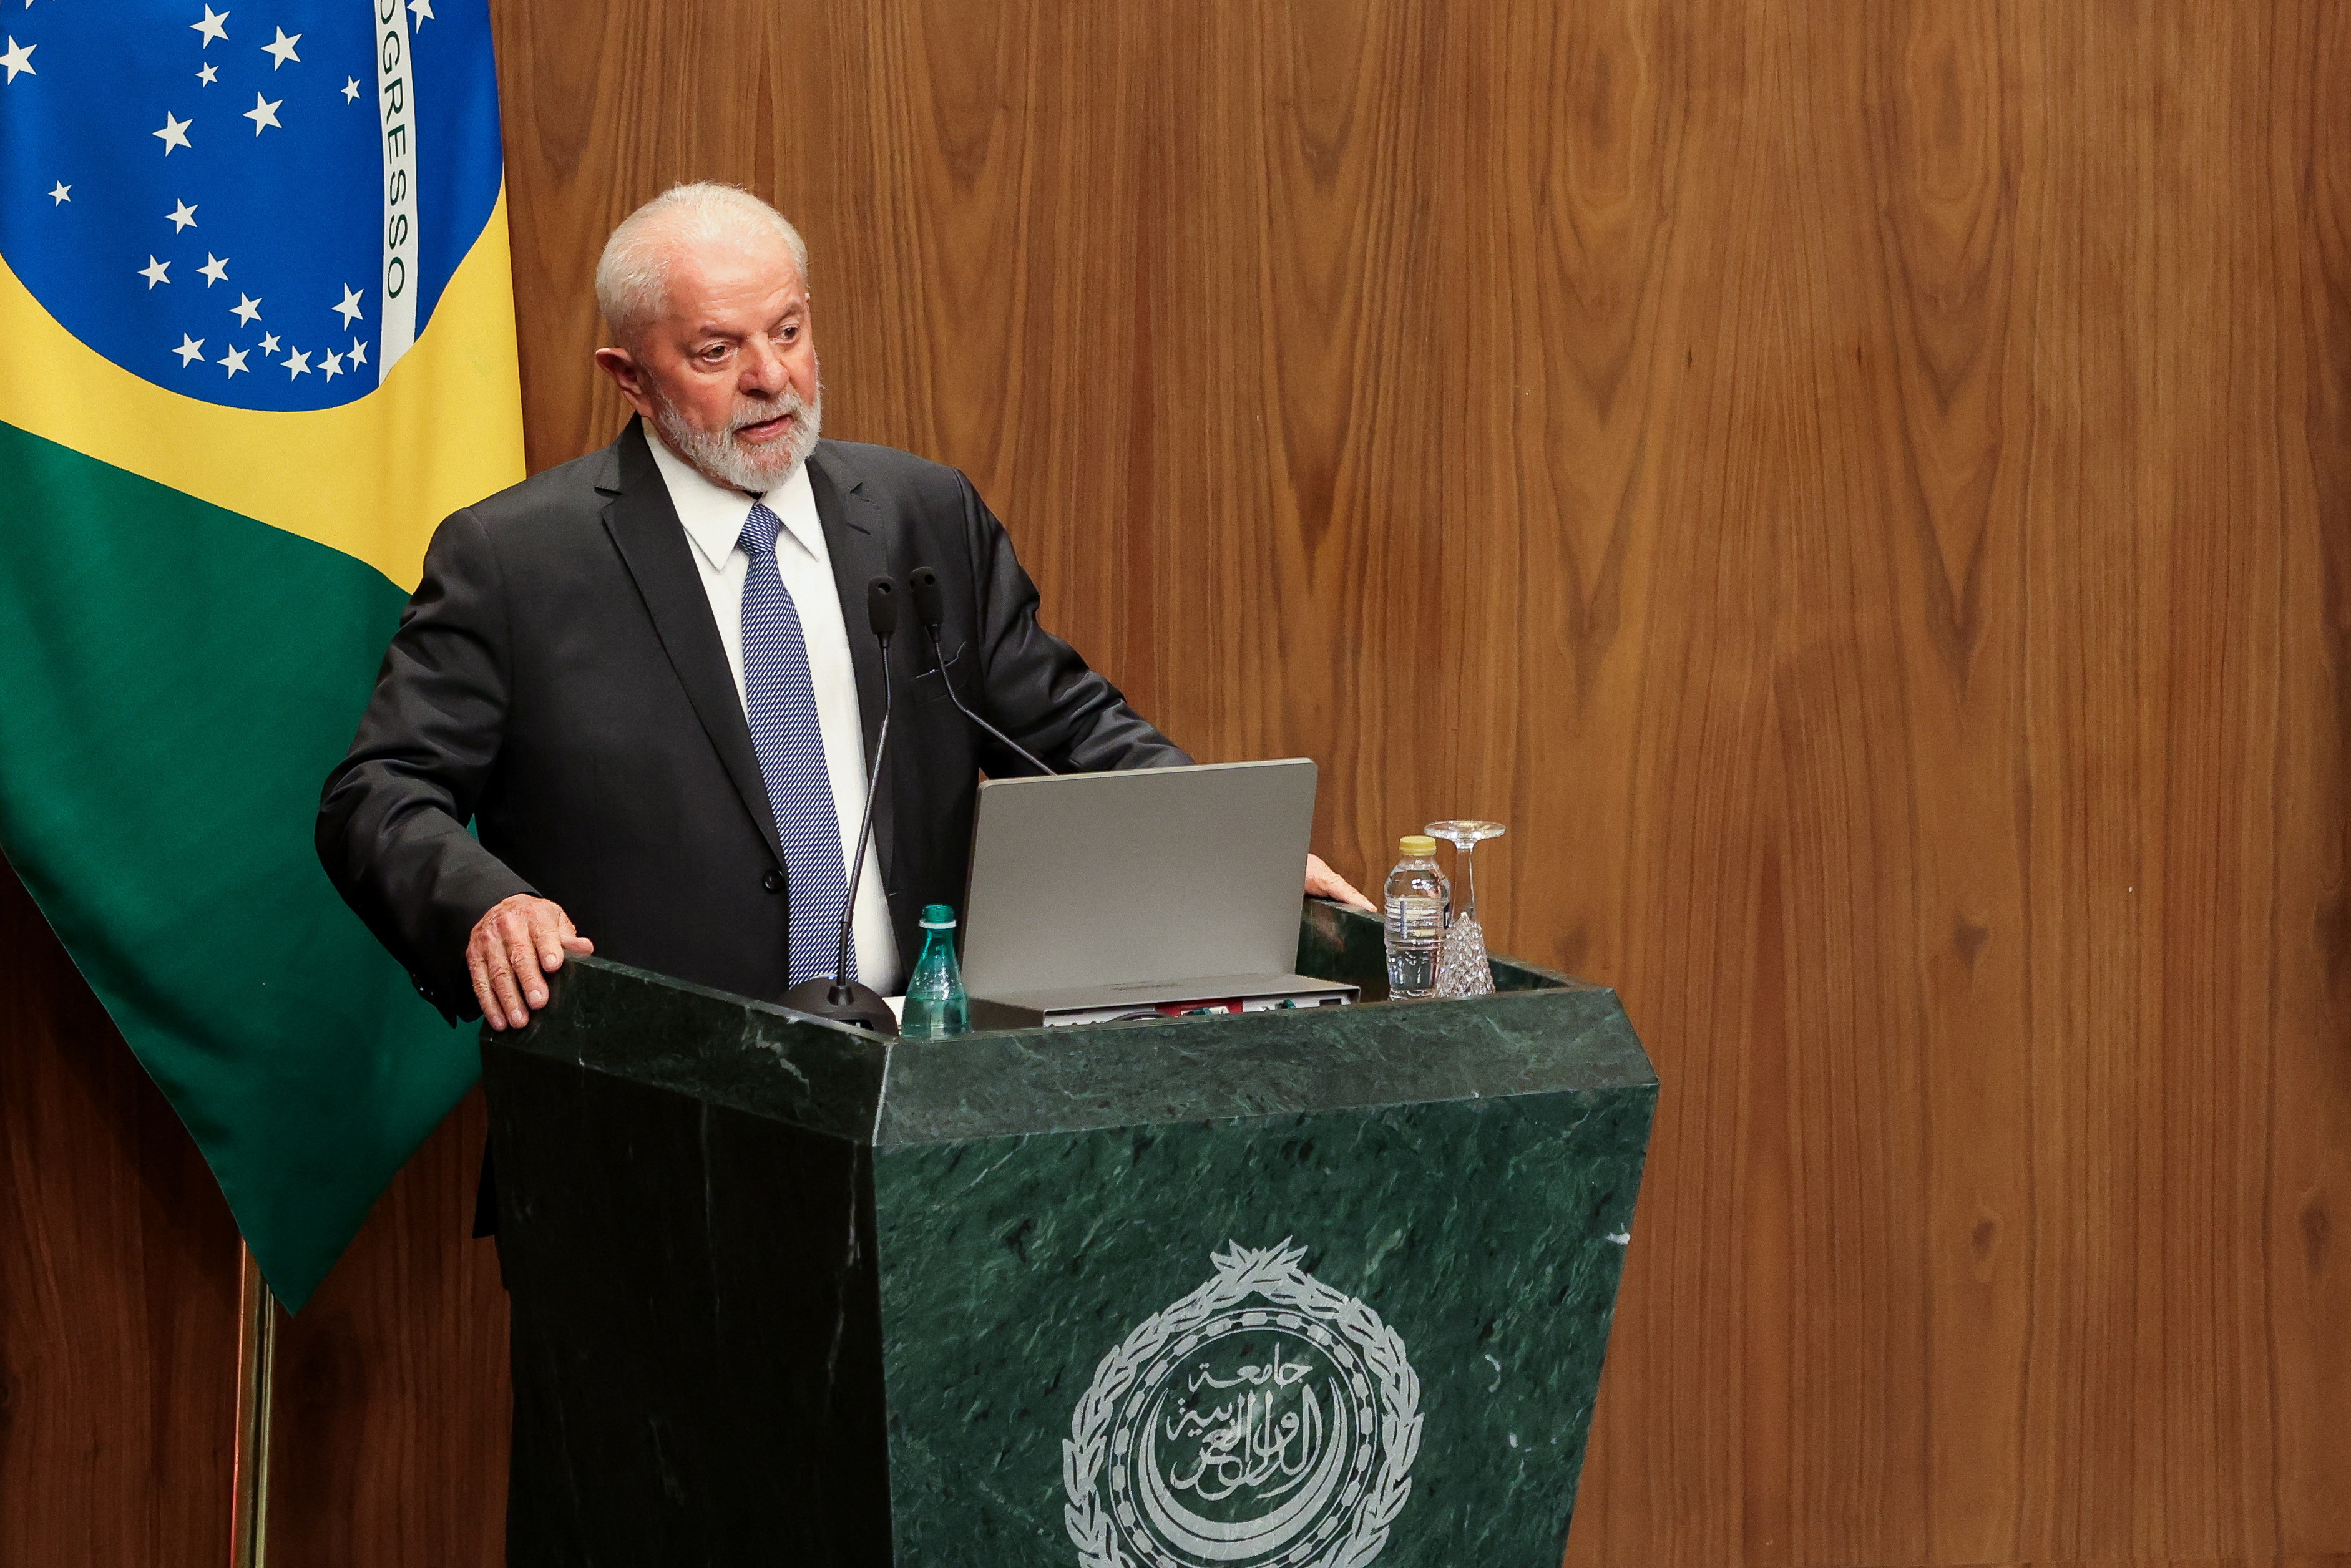 O presidente do Brasil, Luiz Inácio Lula da Silva, discursa durante visita à sede da Liga Árabe, no Cairo